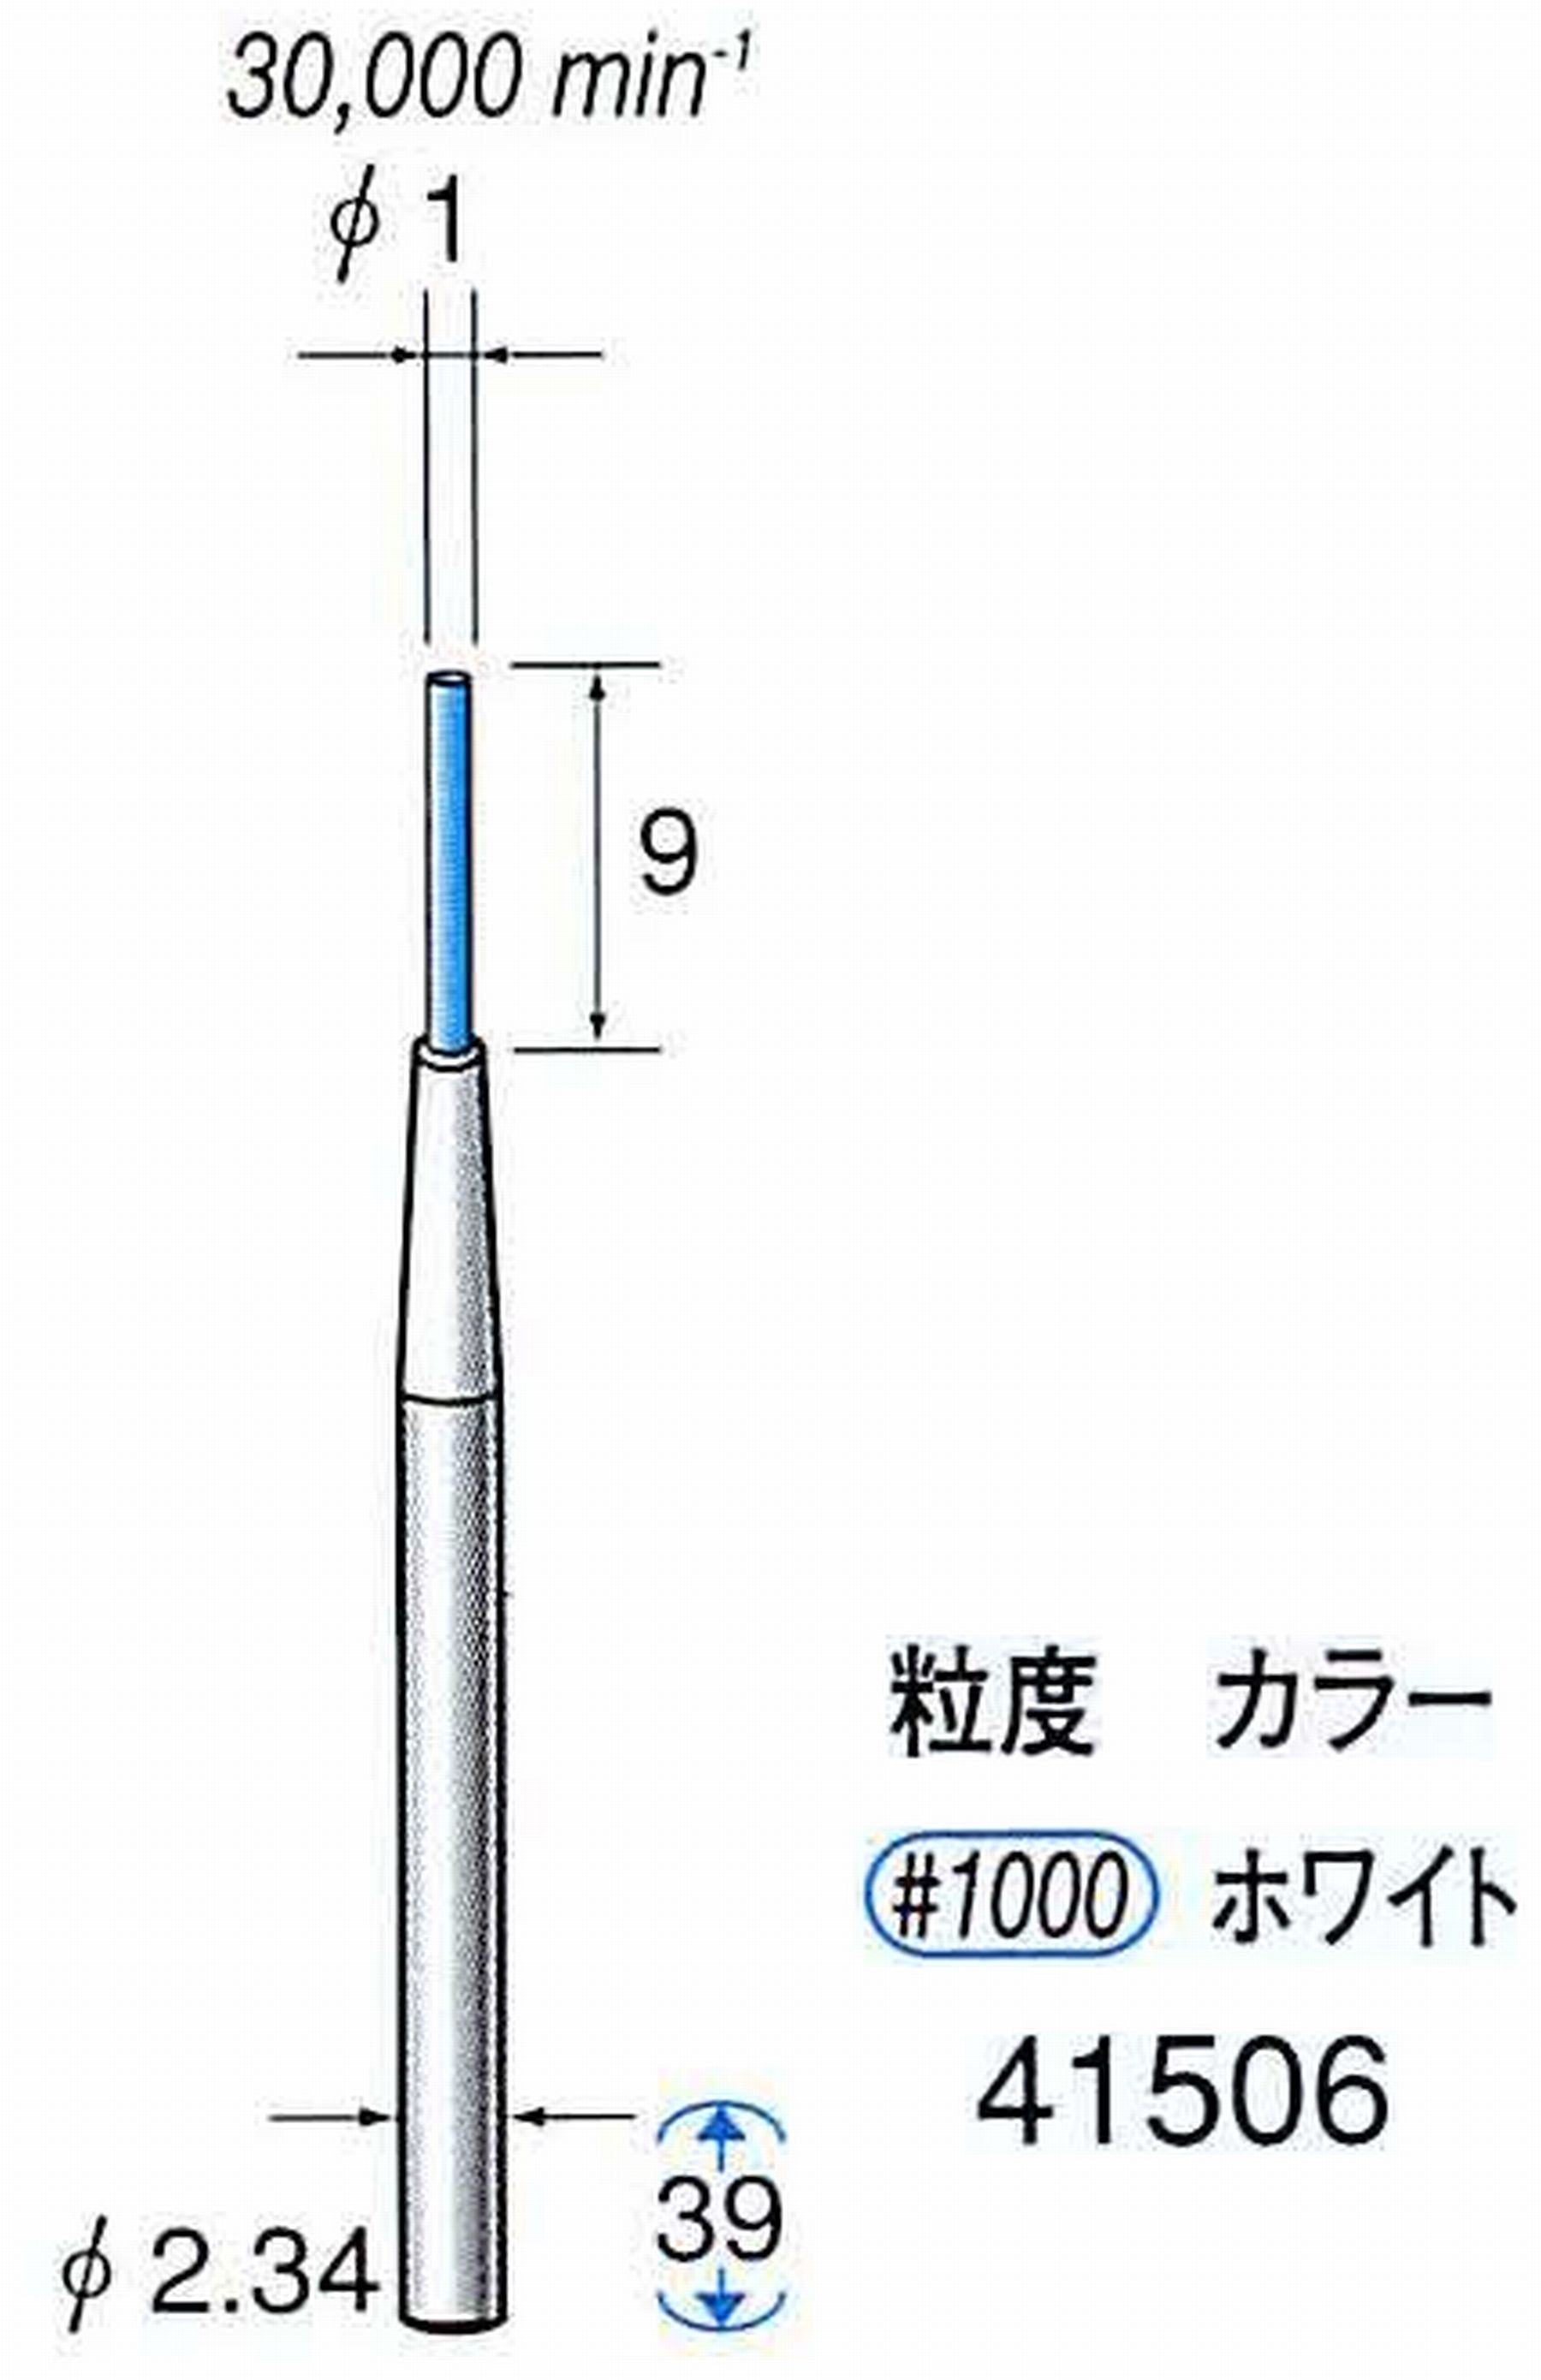 ナカニシ/NAKANISHI セラファイバー精密軸付砥石(カラー ホワイト) 軸径(シャンク) φ2.34mm 41506